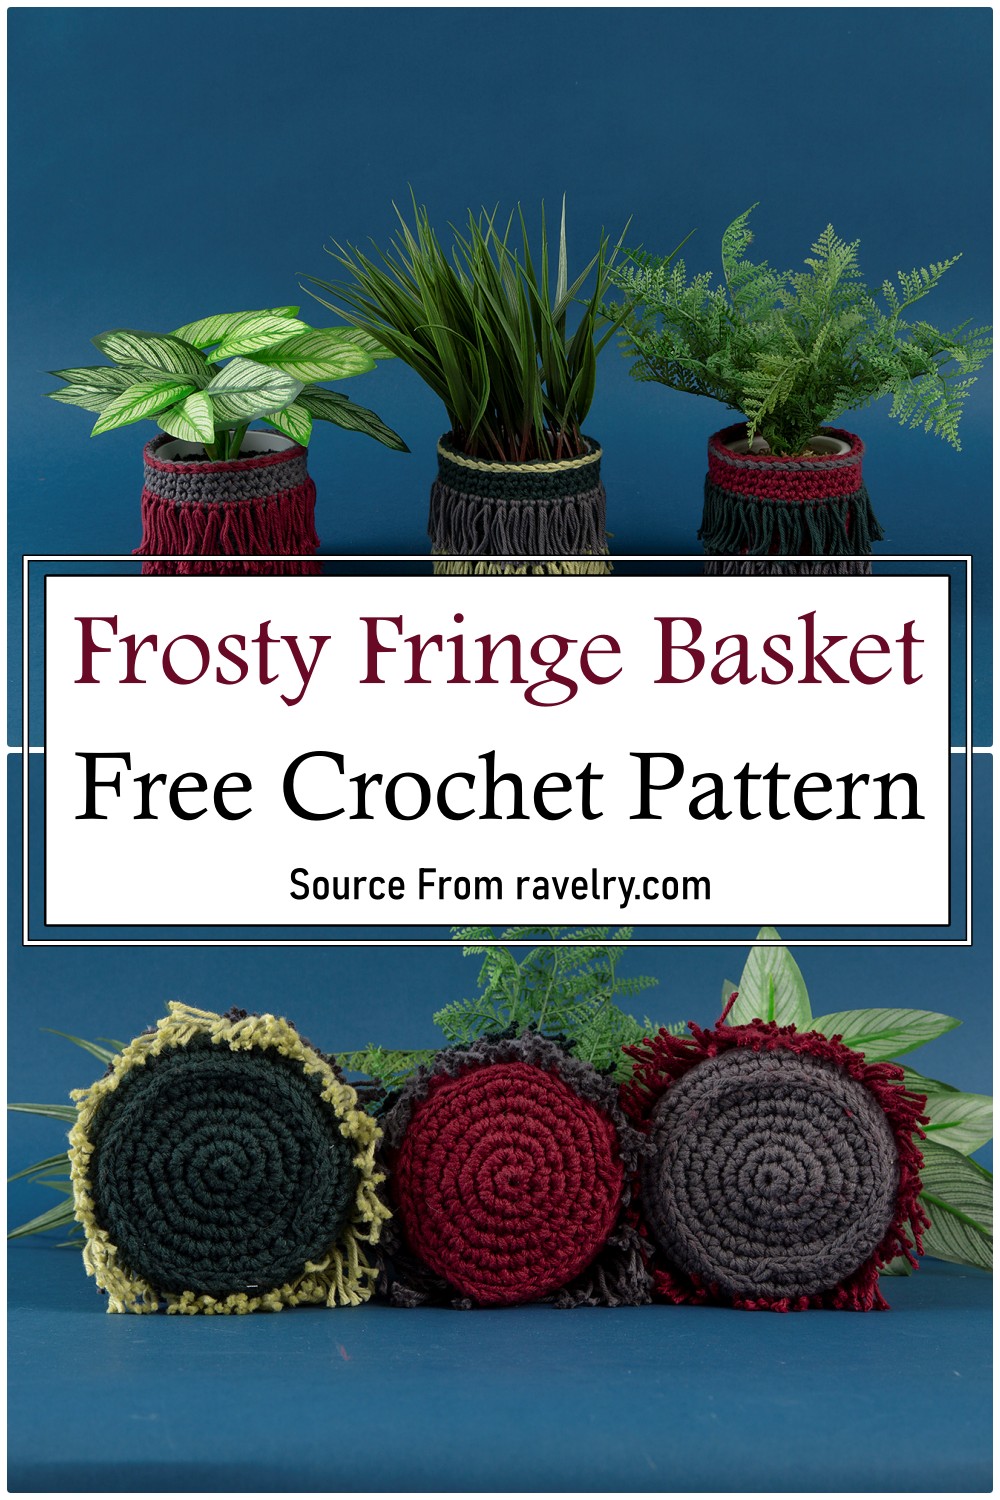 Frosty Fringe Basket